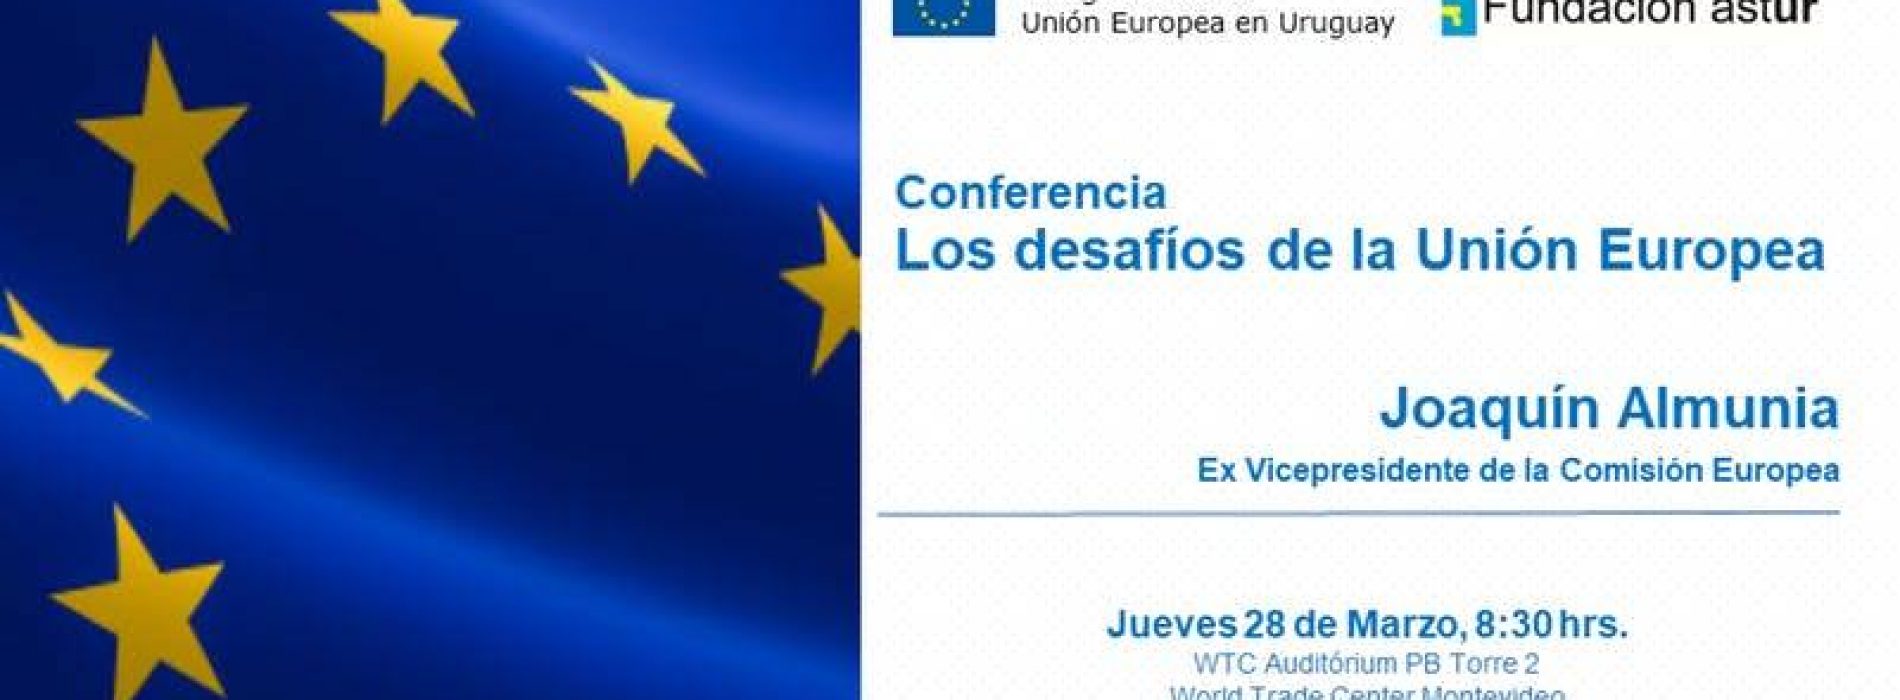 Conferencia “Los desafíos de la Unión Europea”